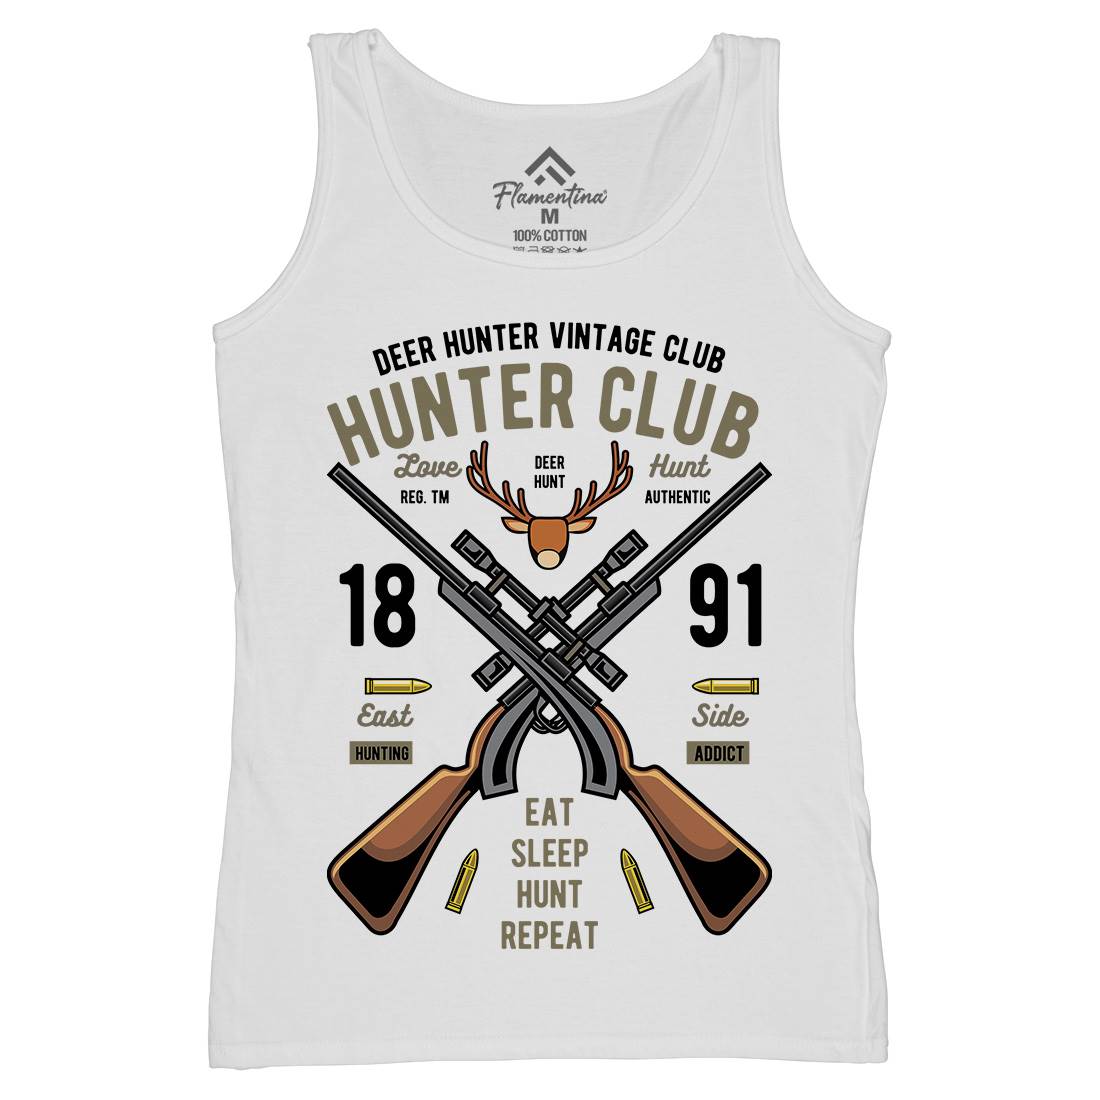 Hunter Club Womens Organic Tank Top Vest Sport C378